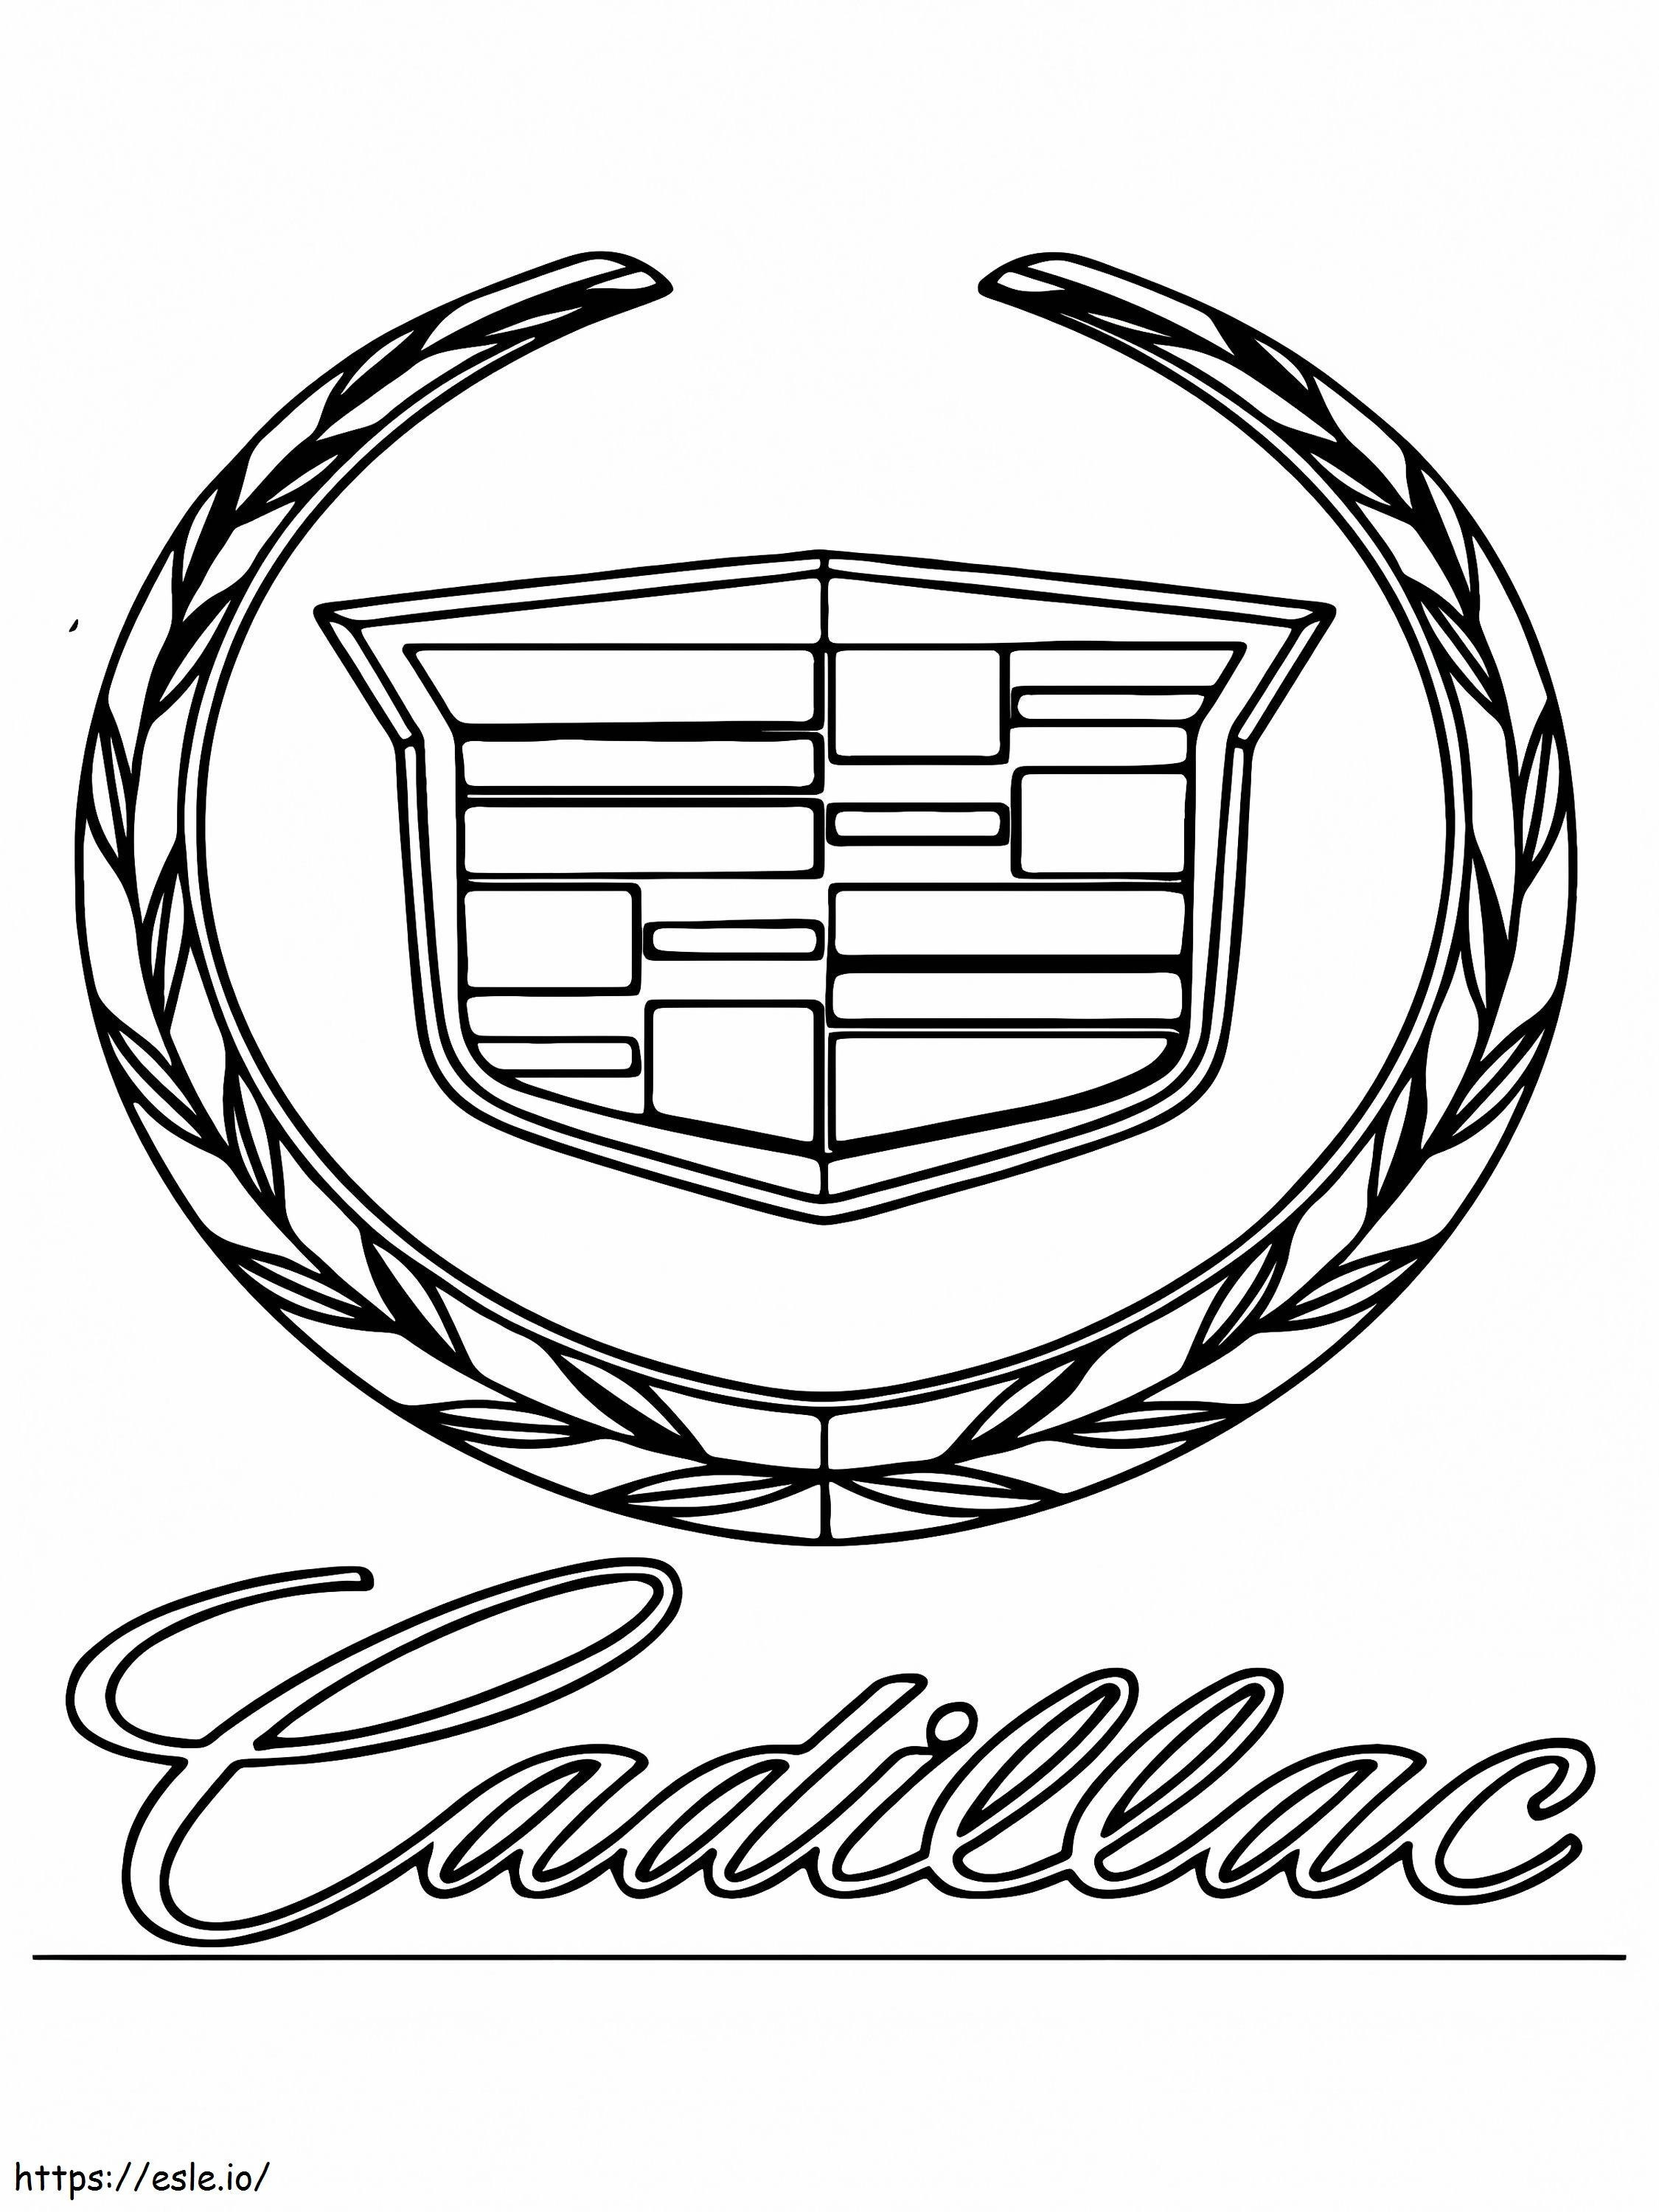 Logotipo Del Coche Cadillac para colorear